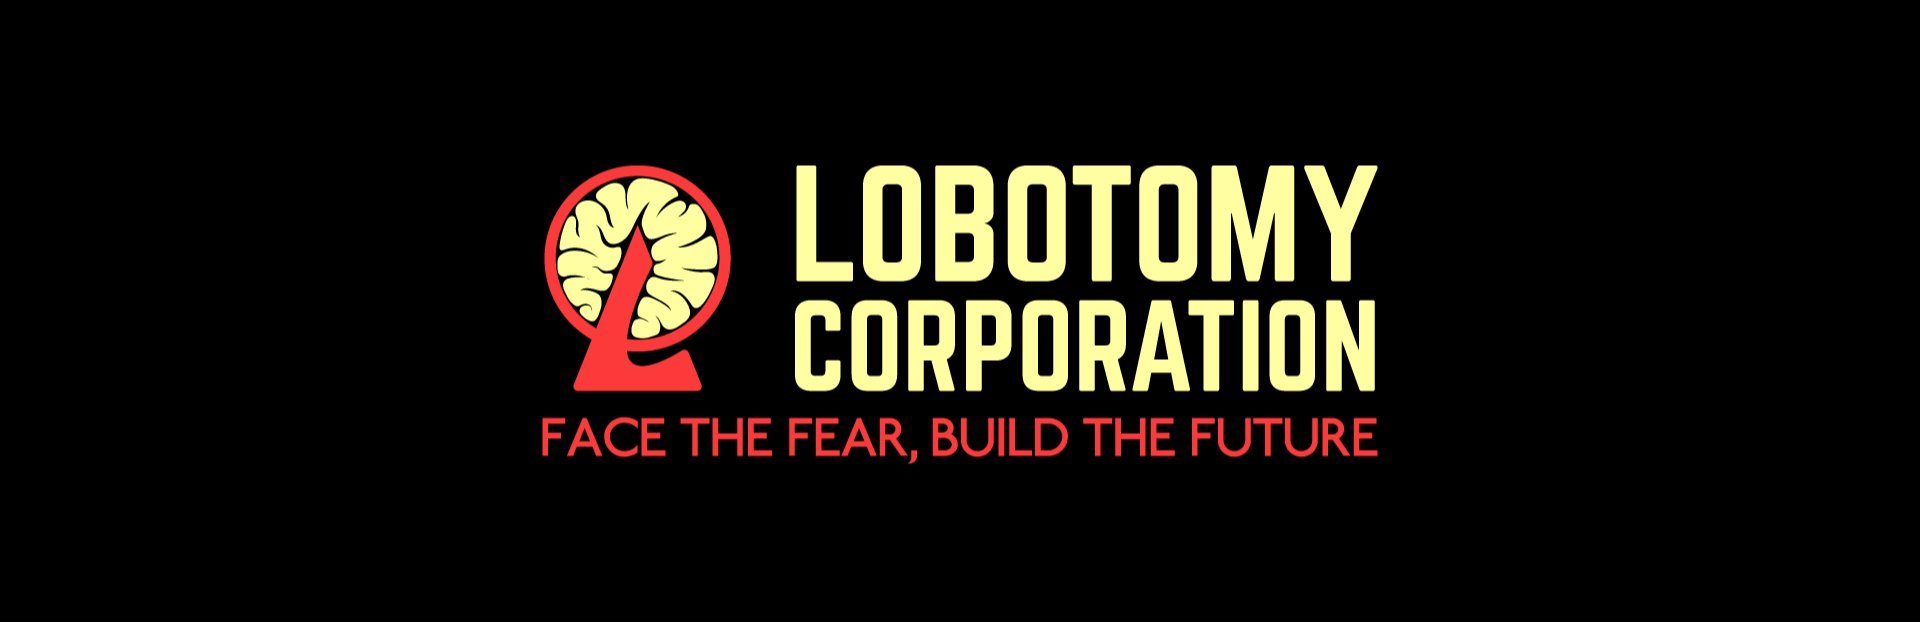 Lobotomy Corporation Hg Mediavida